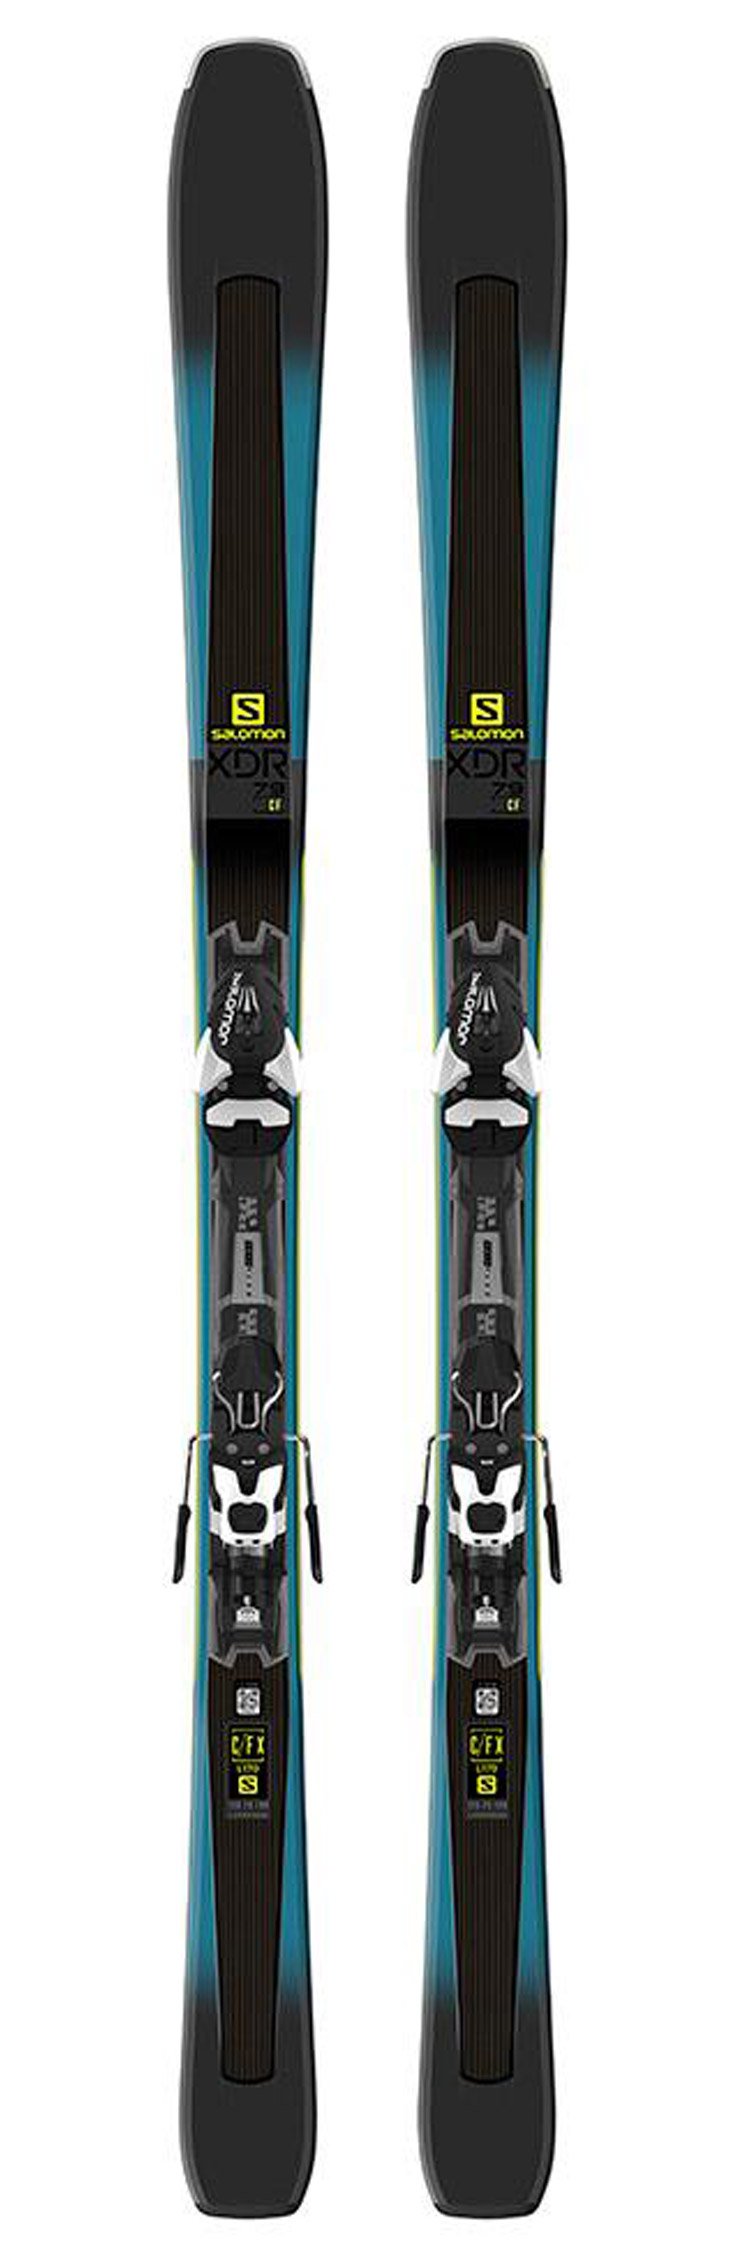 reinigen geloof Voorbereiding Salomon Alpine ski set XDR 79 CF + bindings - Winter 2019 | Glisshop